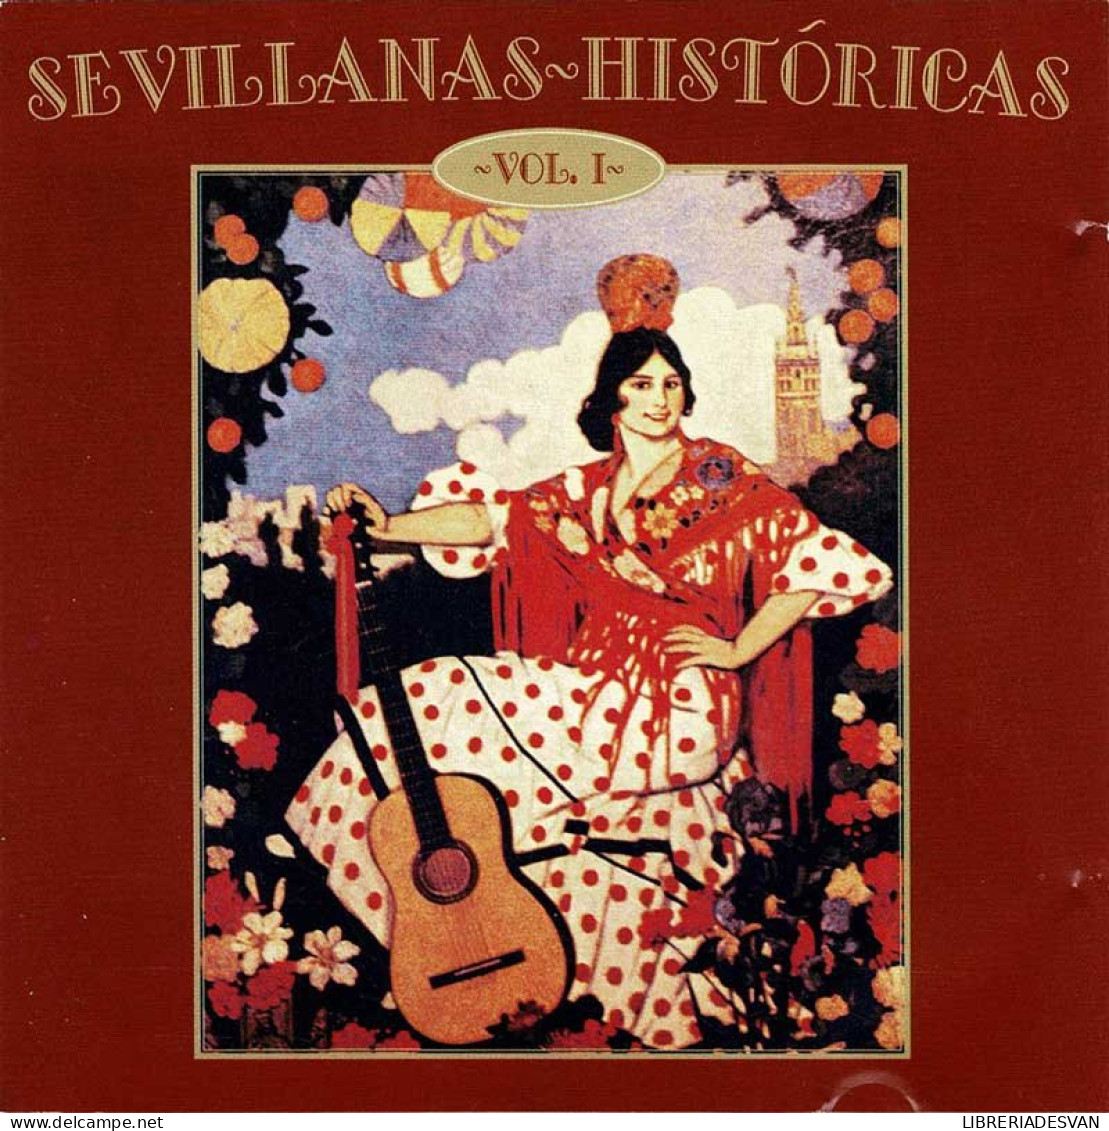 Sevillanas Históricas, Vol. 1. CD - Autres - Musique Espagnole